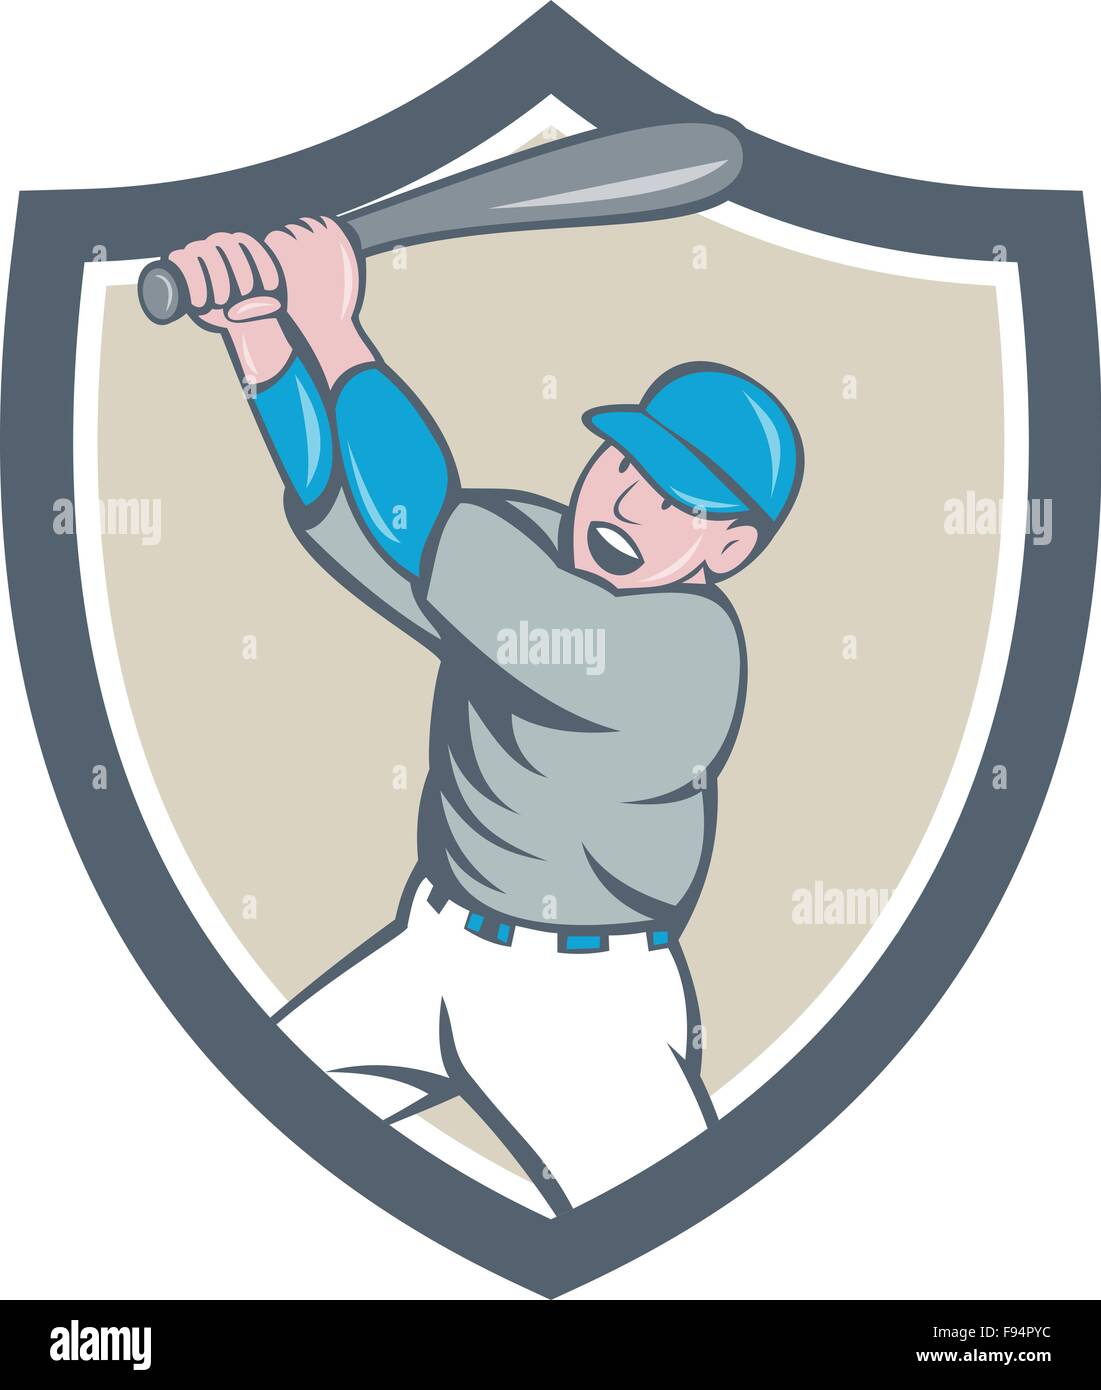 Illustrazione di un american giocatore di baseball azienda bat batting homer home run insieme all'interno della protezione cresta su sfondo isolato fatto in stile cartoon. Illustrazione Vettoriale